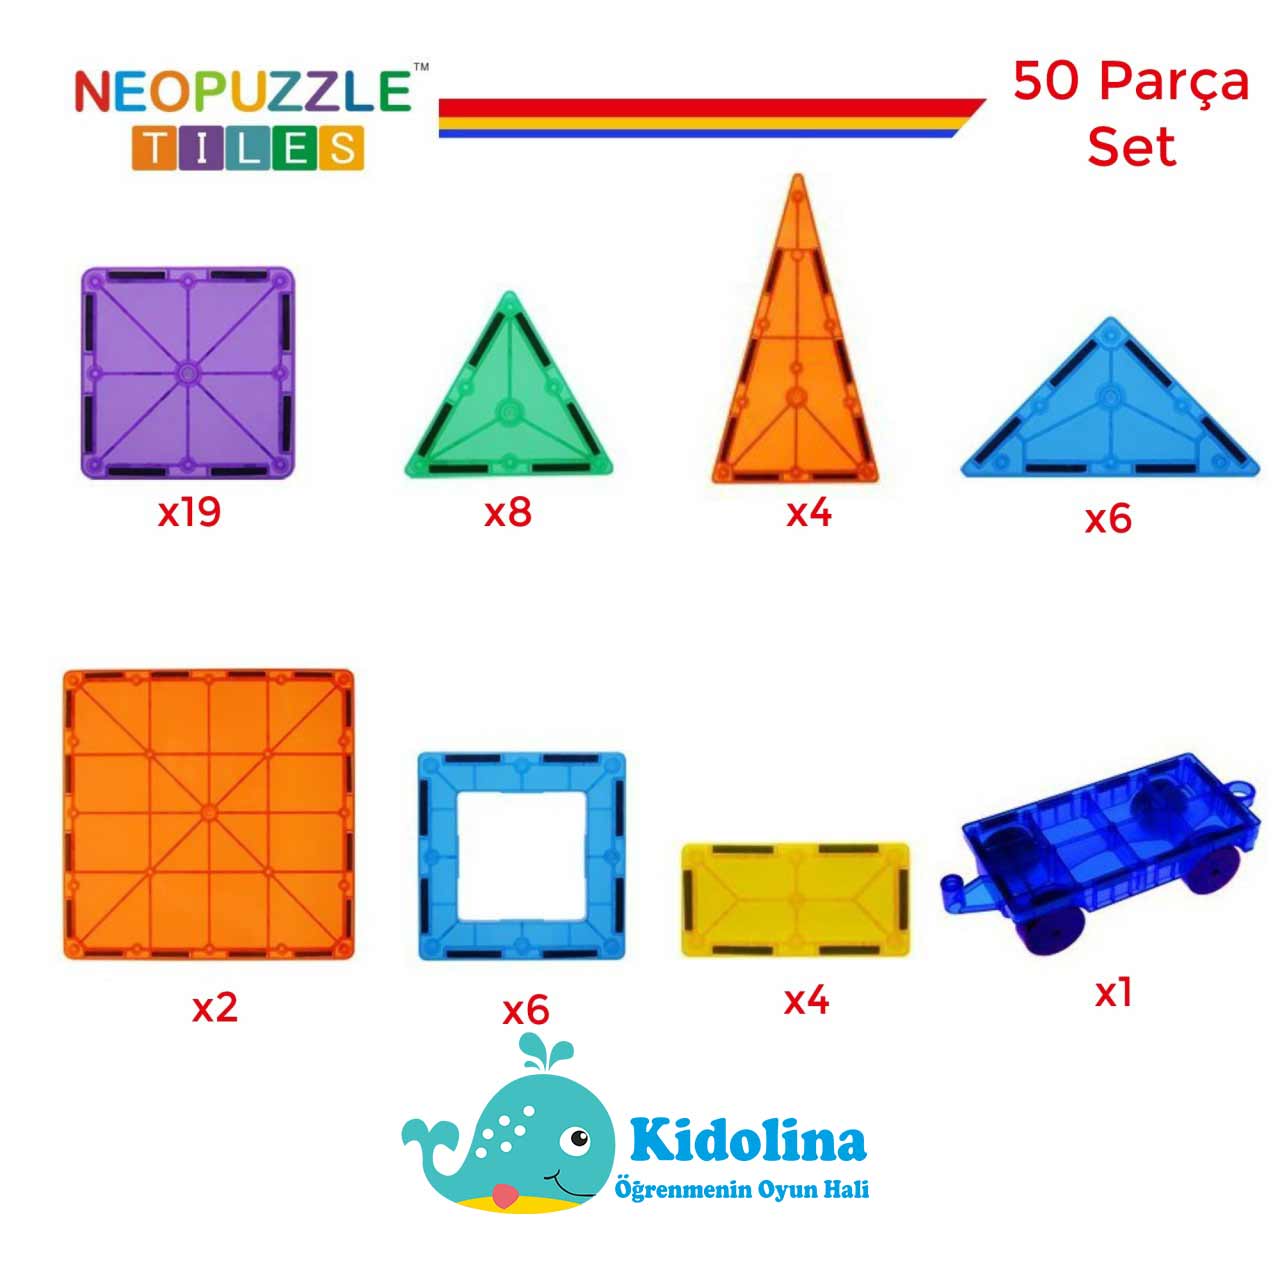 neopuzzle_tiles_50_parca_icerik